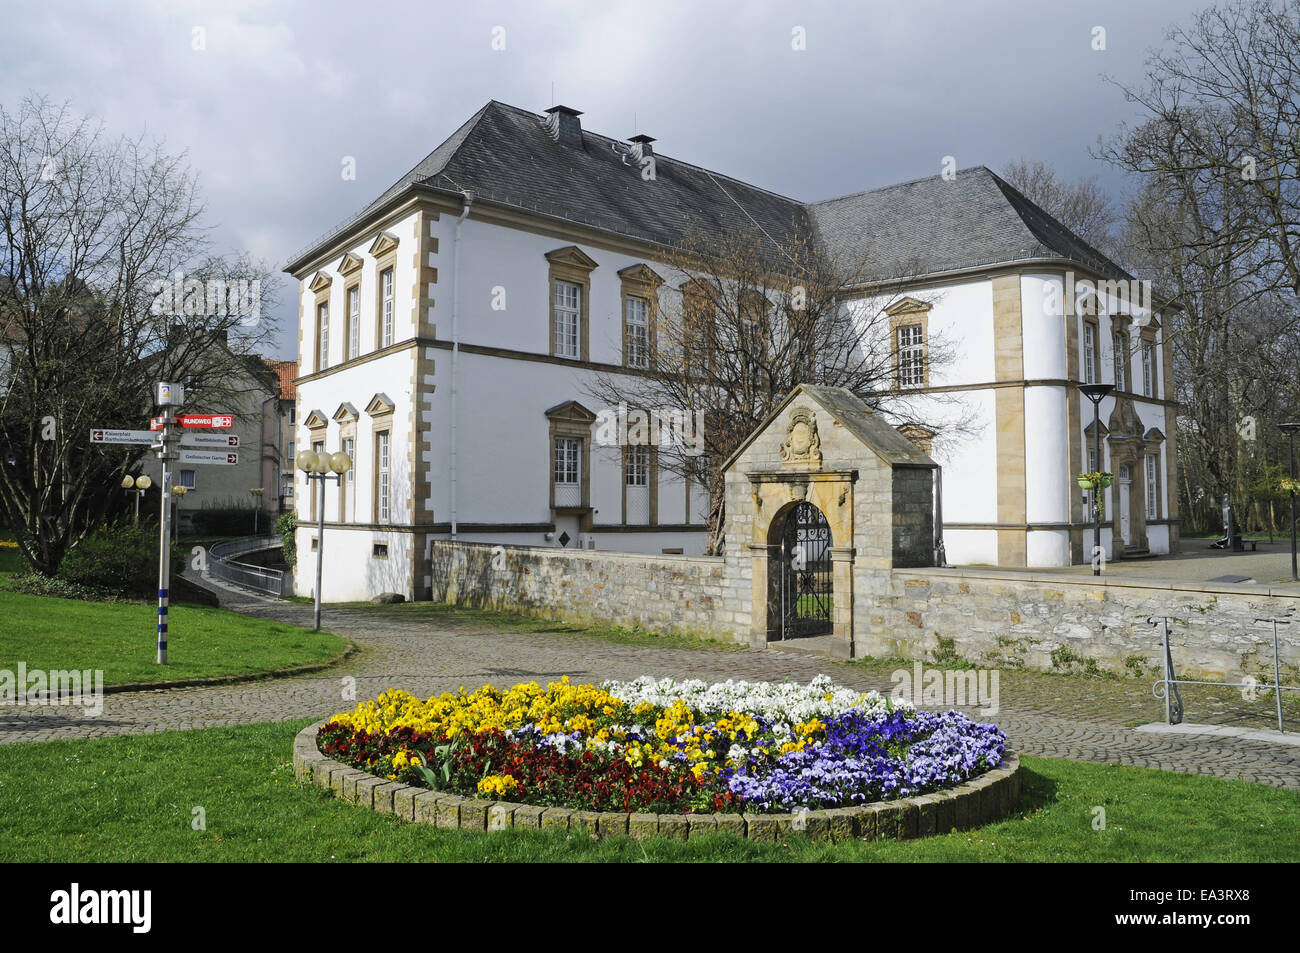 City library, Paderborn, Germany Stock Photo